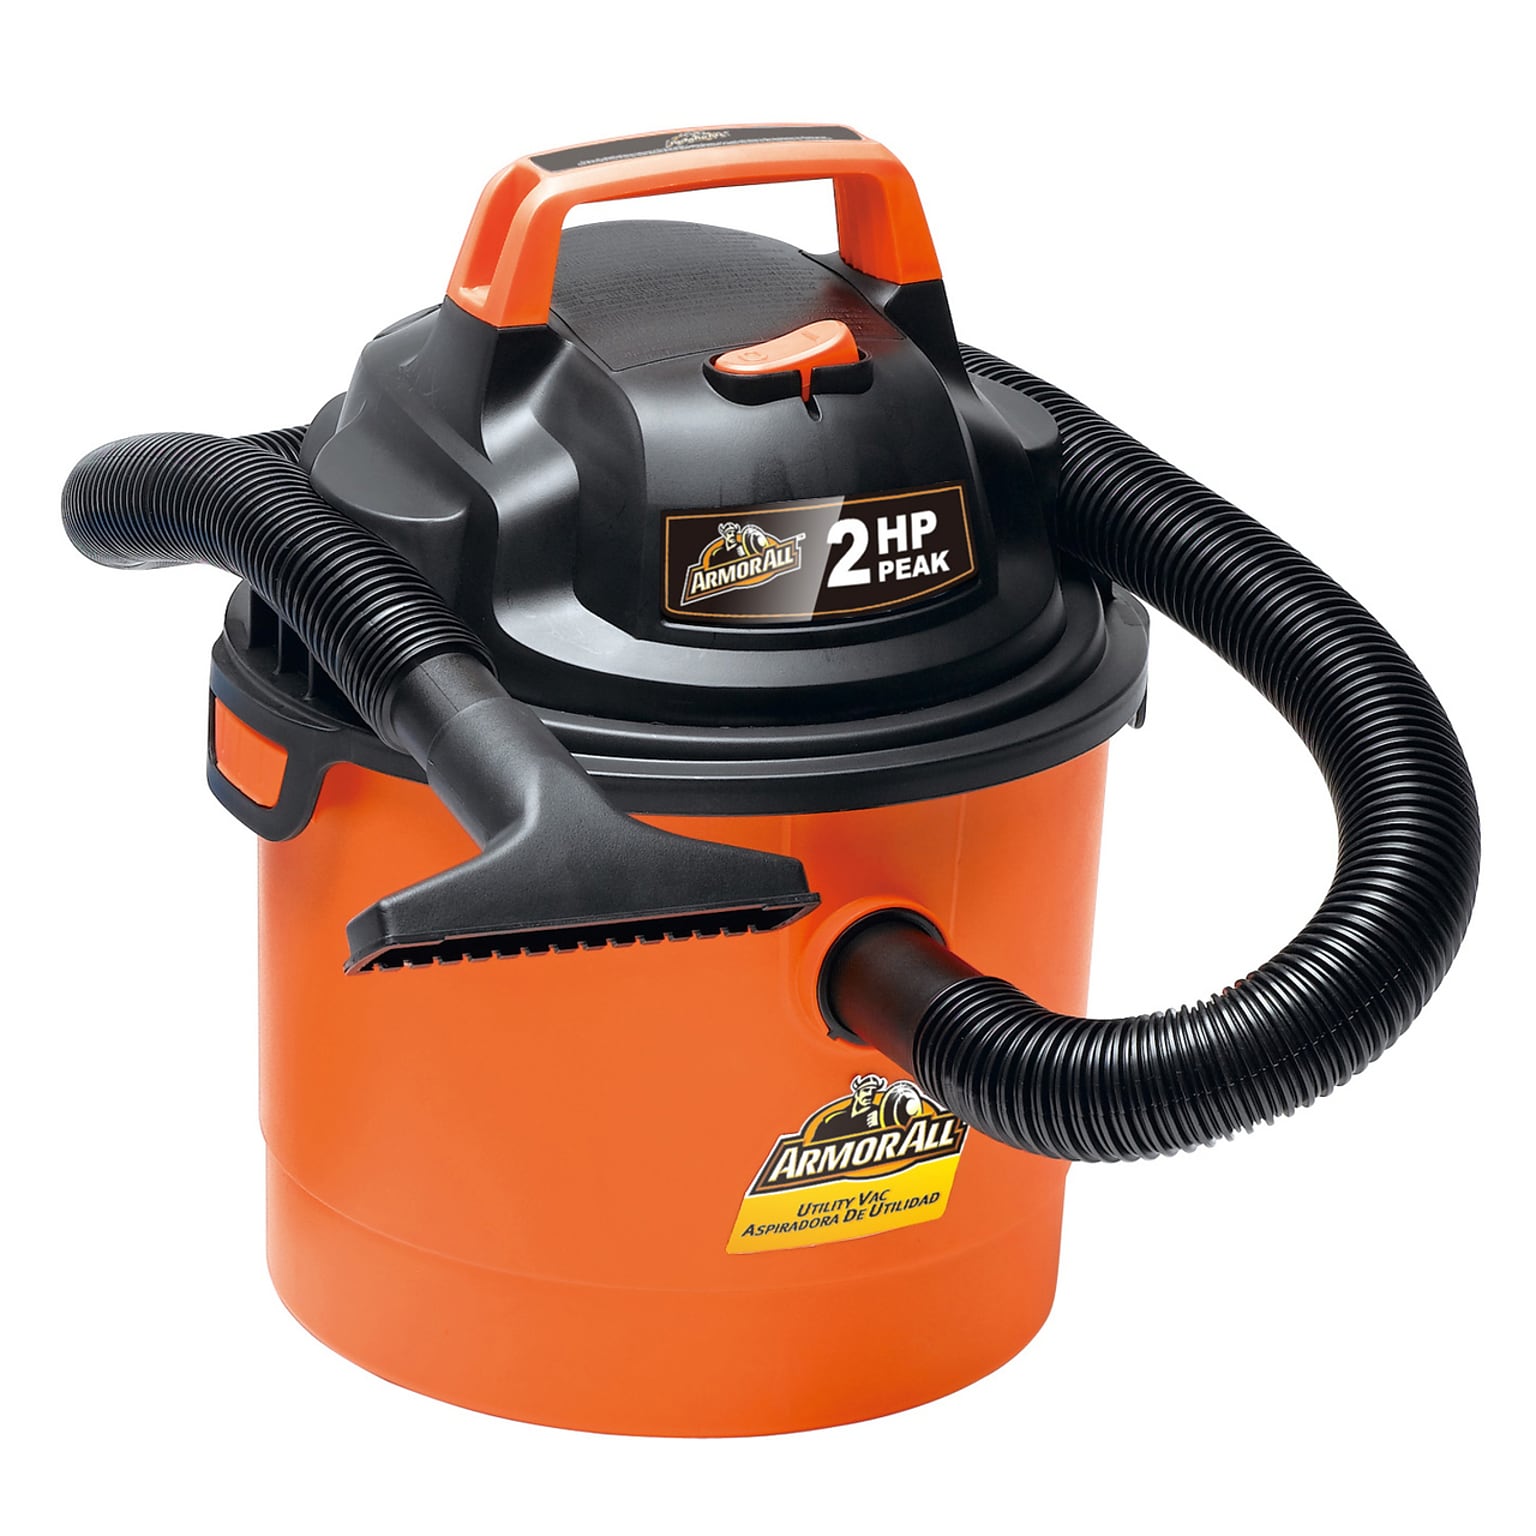 Armor All 2.5 Gal Wet/Dry 2HP Portable Vacuum Cleaner Orange, (VOM205P 0901)